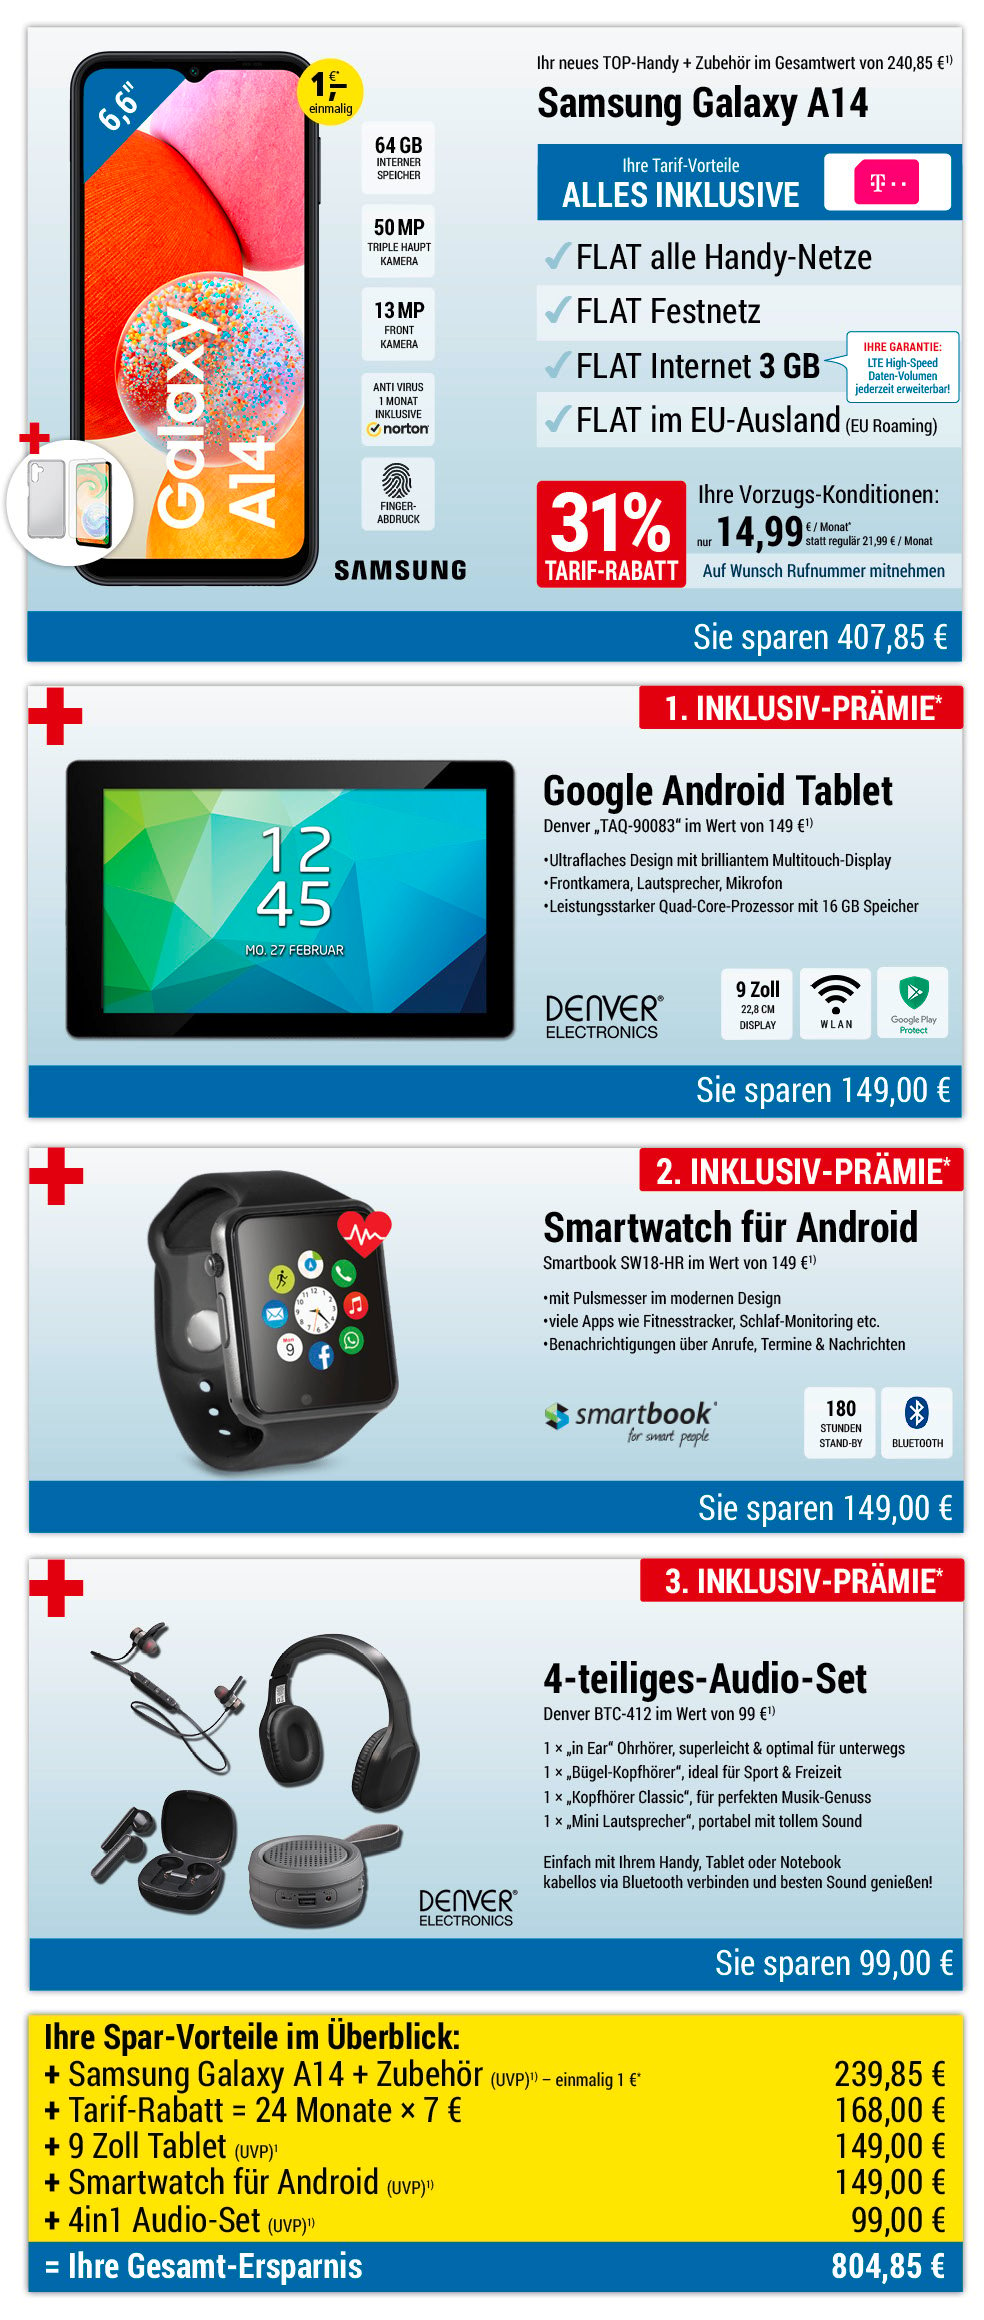 Für nur 1 €*: Samsung Galaxy A14 + Zubehör + Tablet + Smartwatch + Audio-Set mit ALL NET FLAT für 14,99 €/Monat